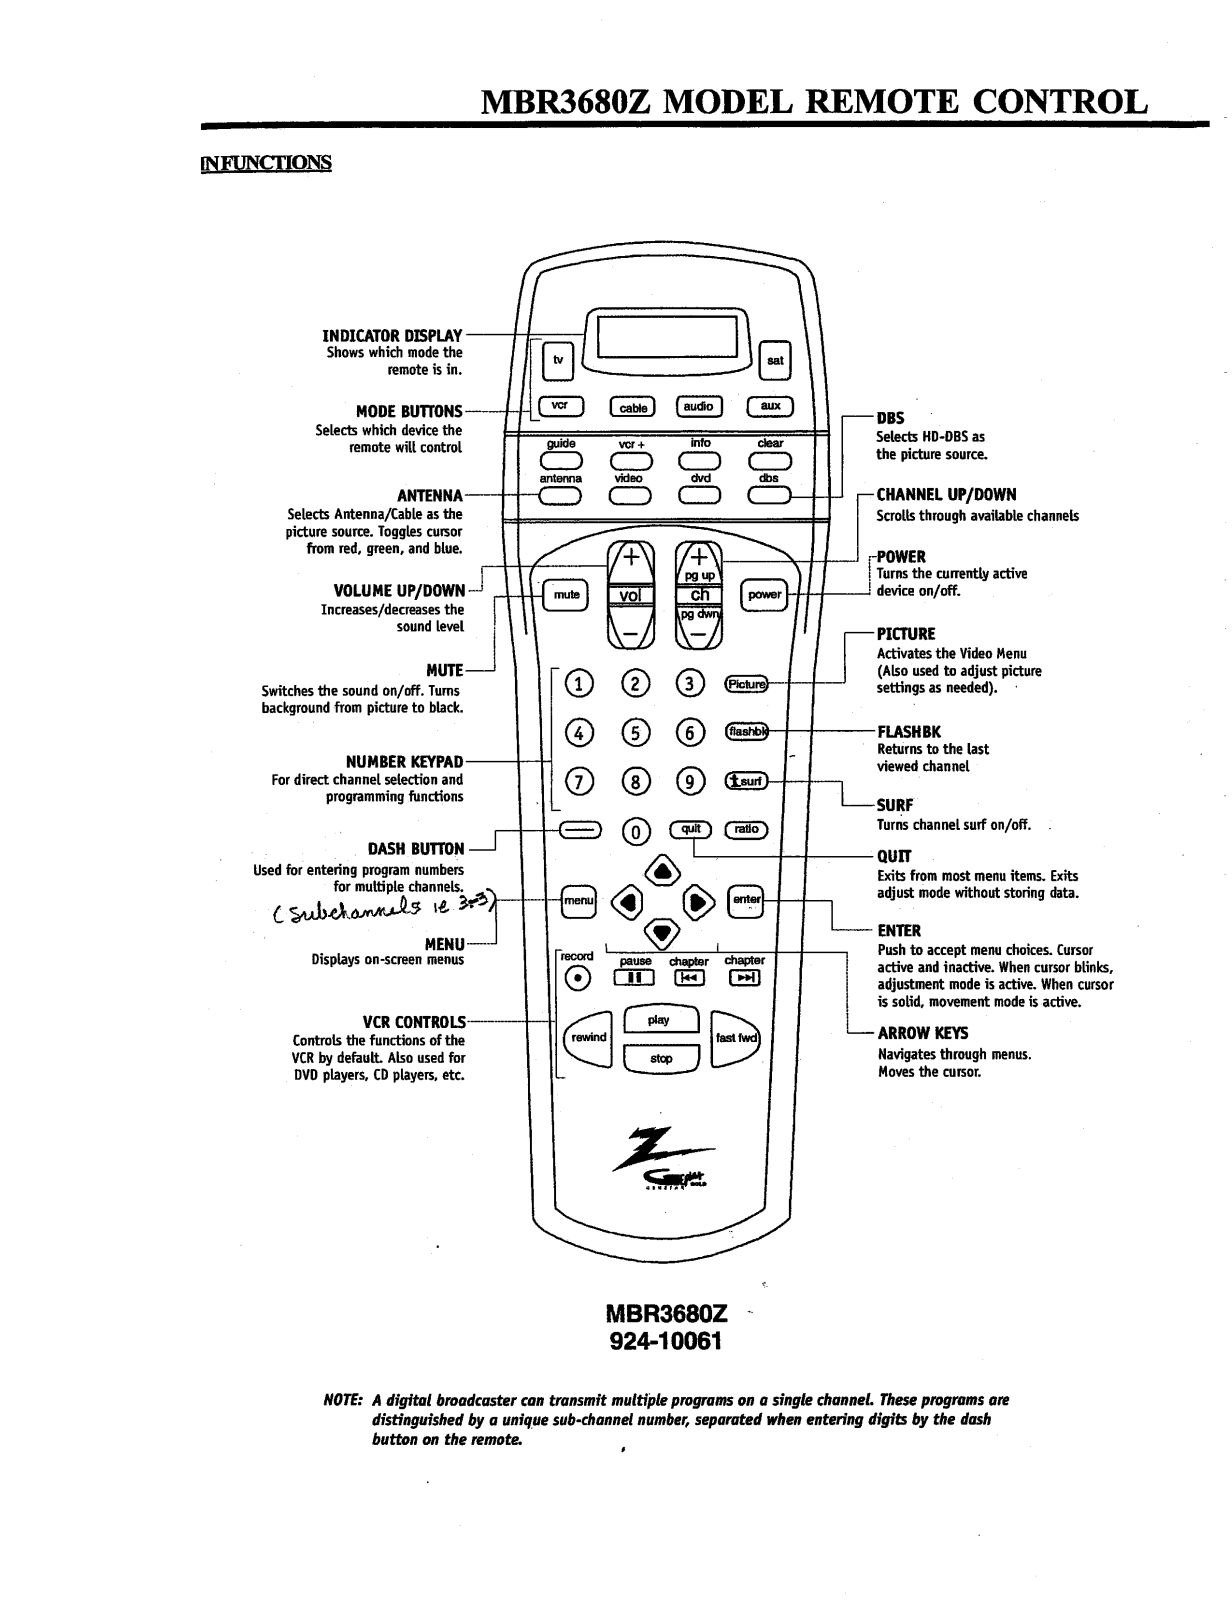 LG MBR3680, MBR3680Z Manual